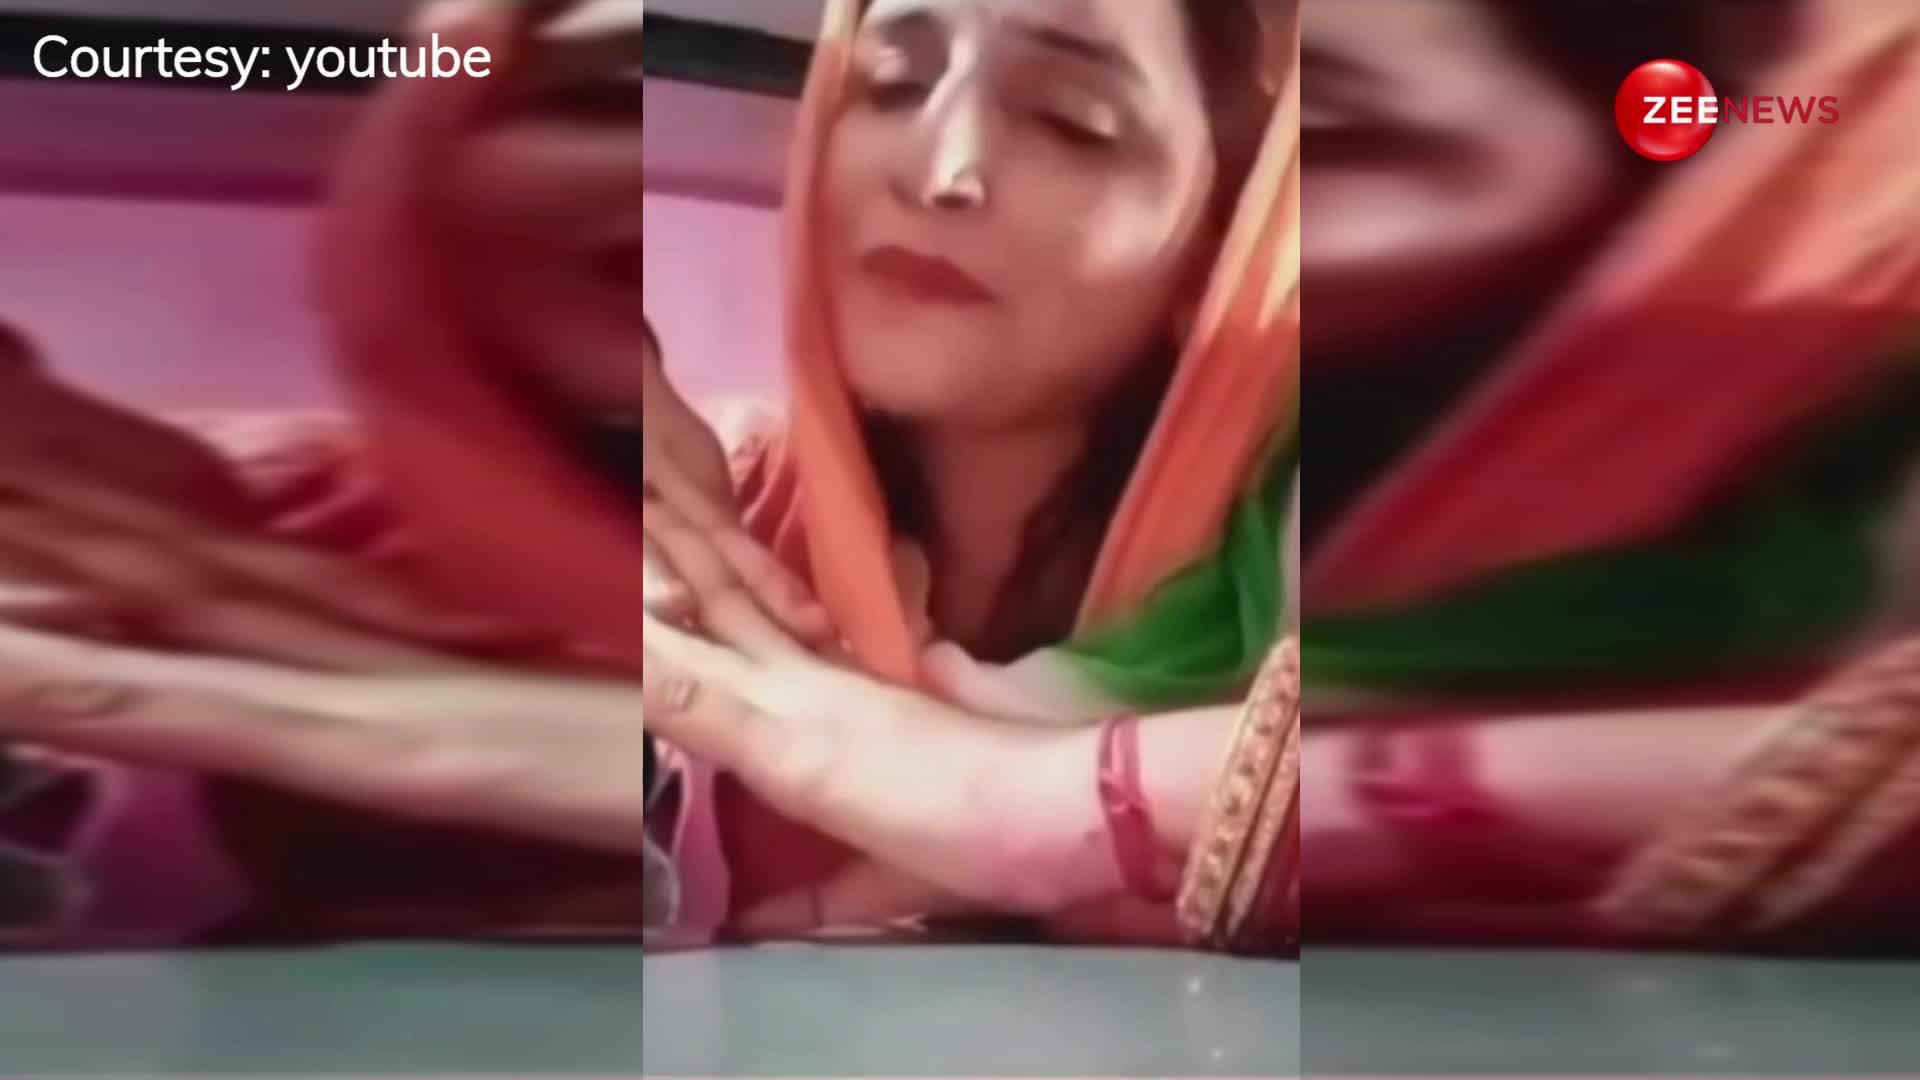 अपने पति Sachin Meena के लिए Seema Haider ने गाया रोमांटिक गाना, इंस्टाग्राम पर ट्रेंड कर रहा है वीडियो